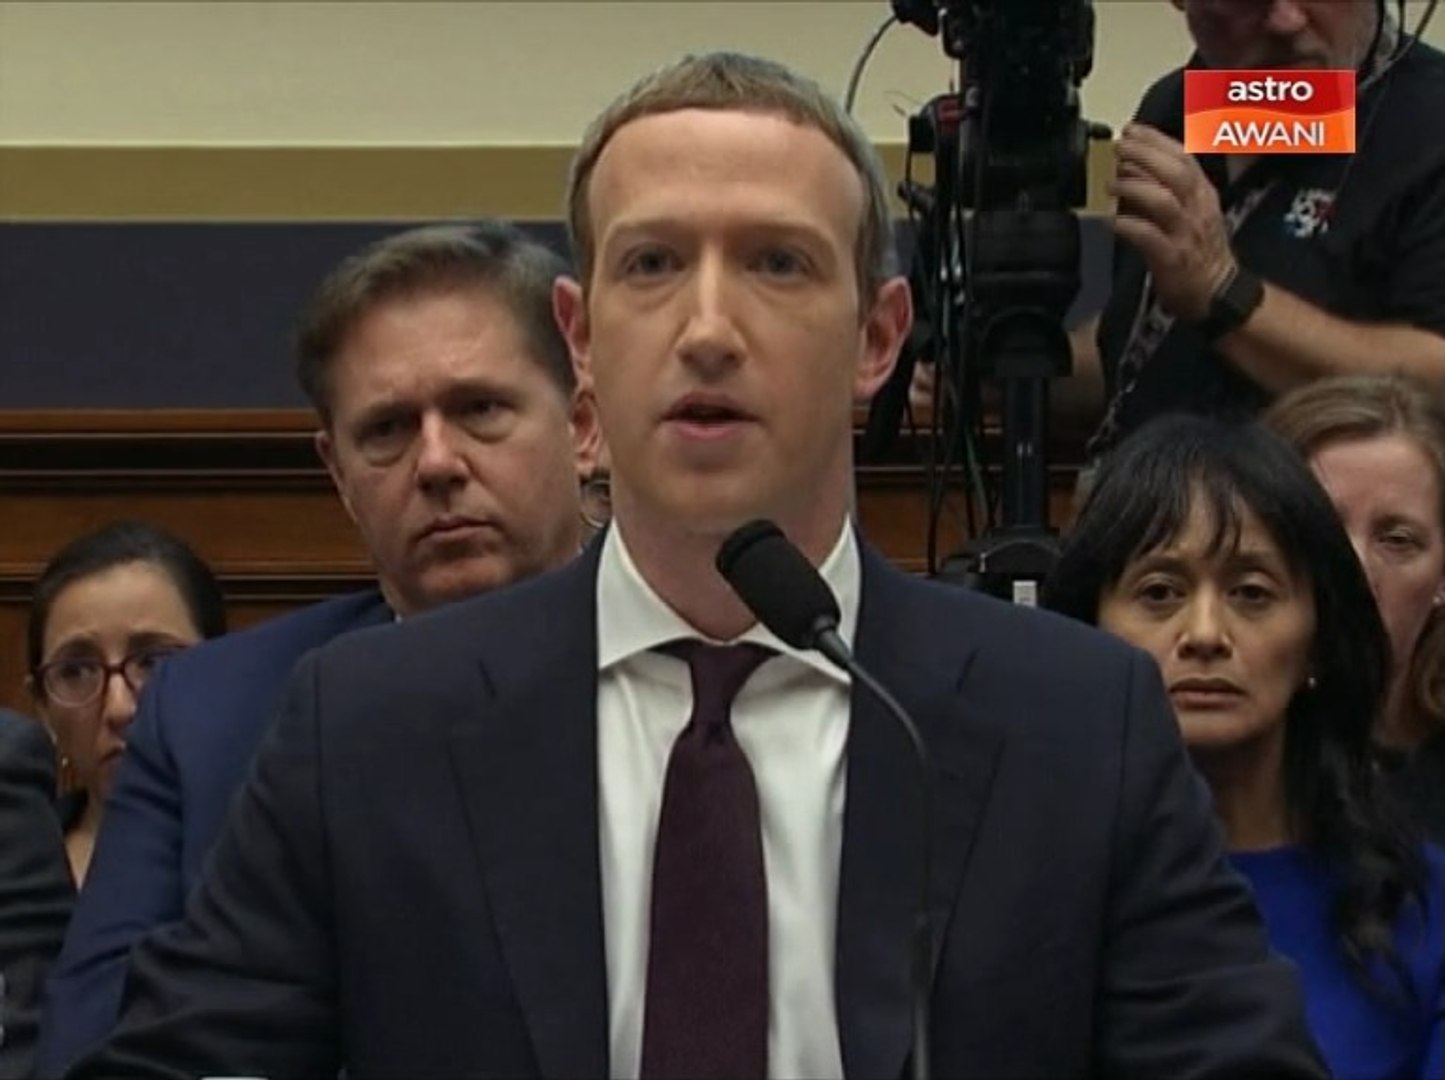 Niaga AWANI: Pendengaran Kongres Mark Zuckerberg